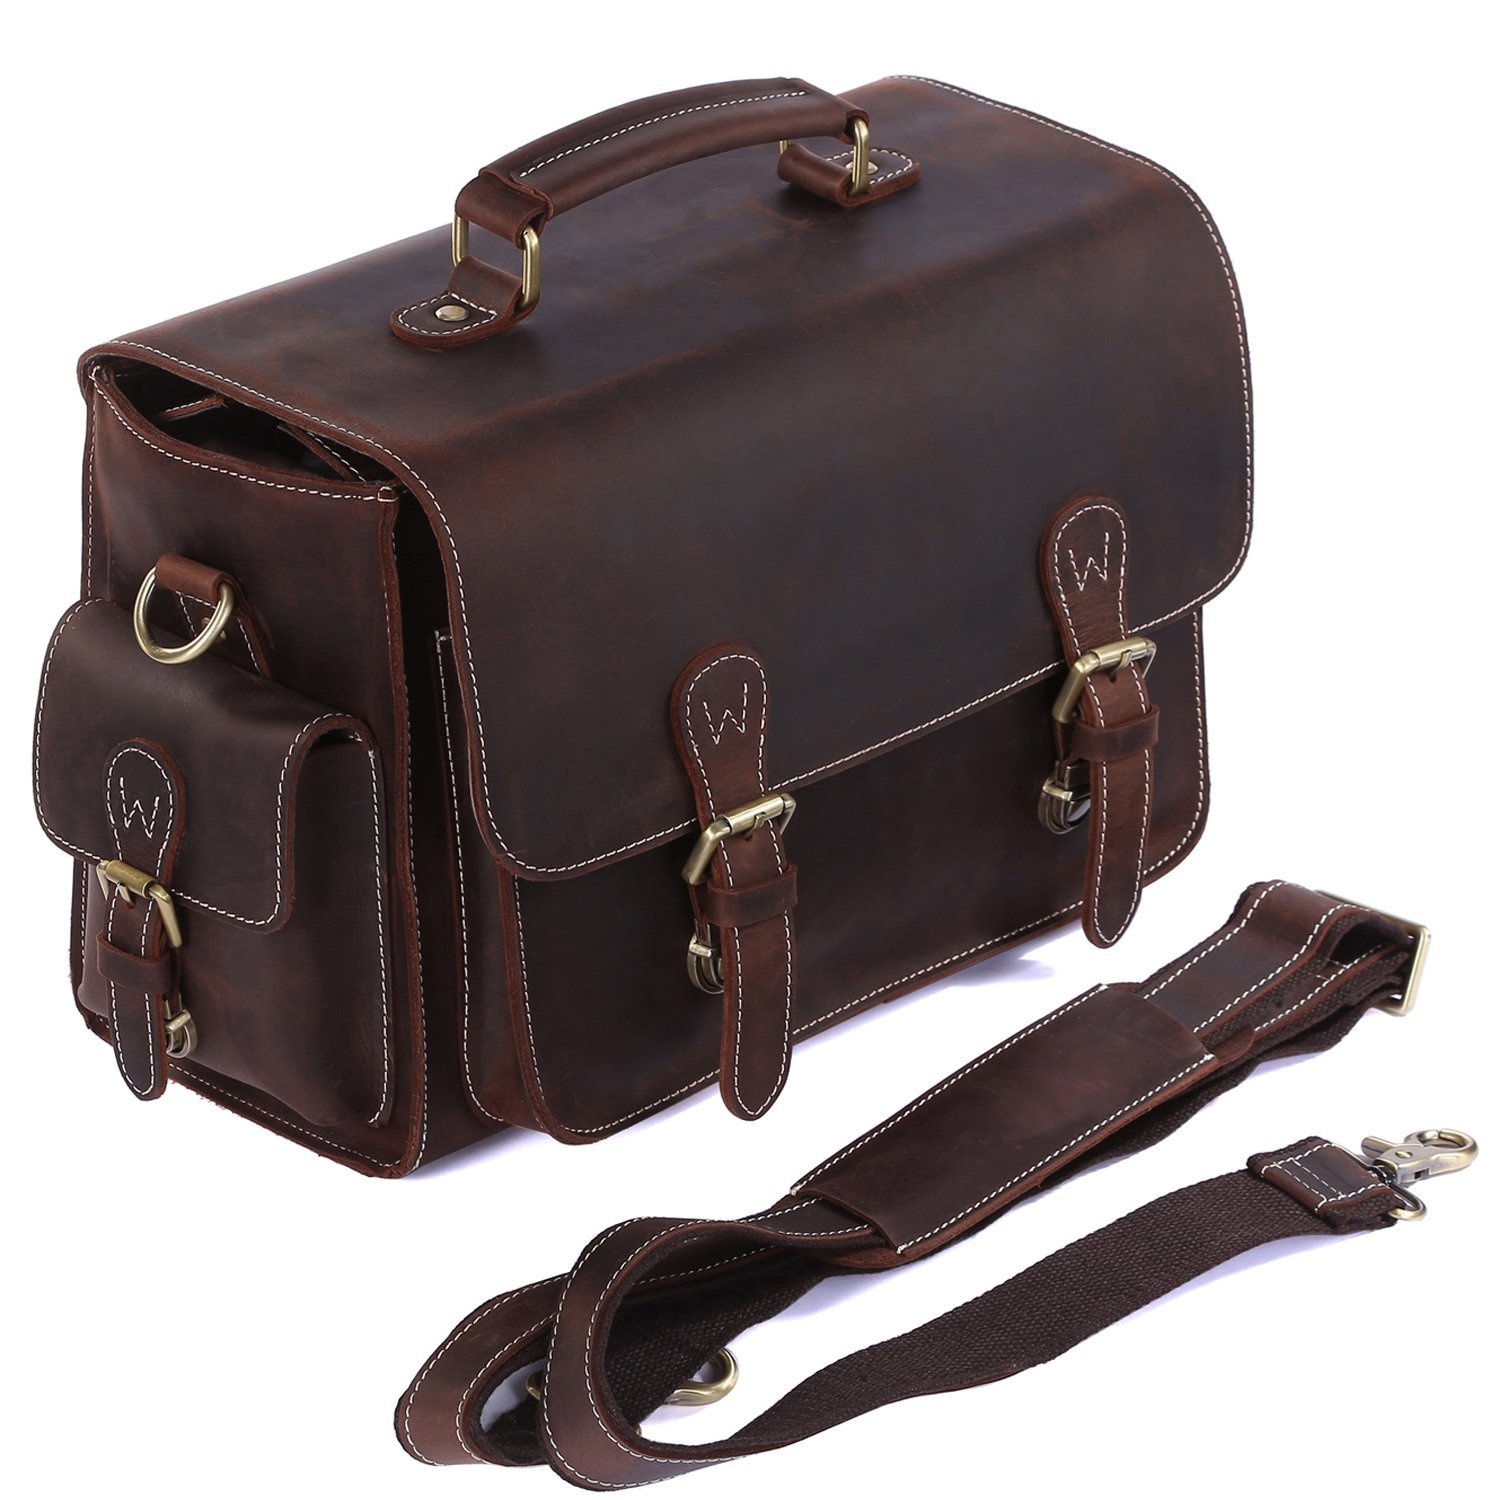 S-ZONE Leather Bag, best dslr bag, best dslr camera bag, best dslr camera backpack